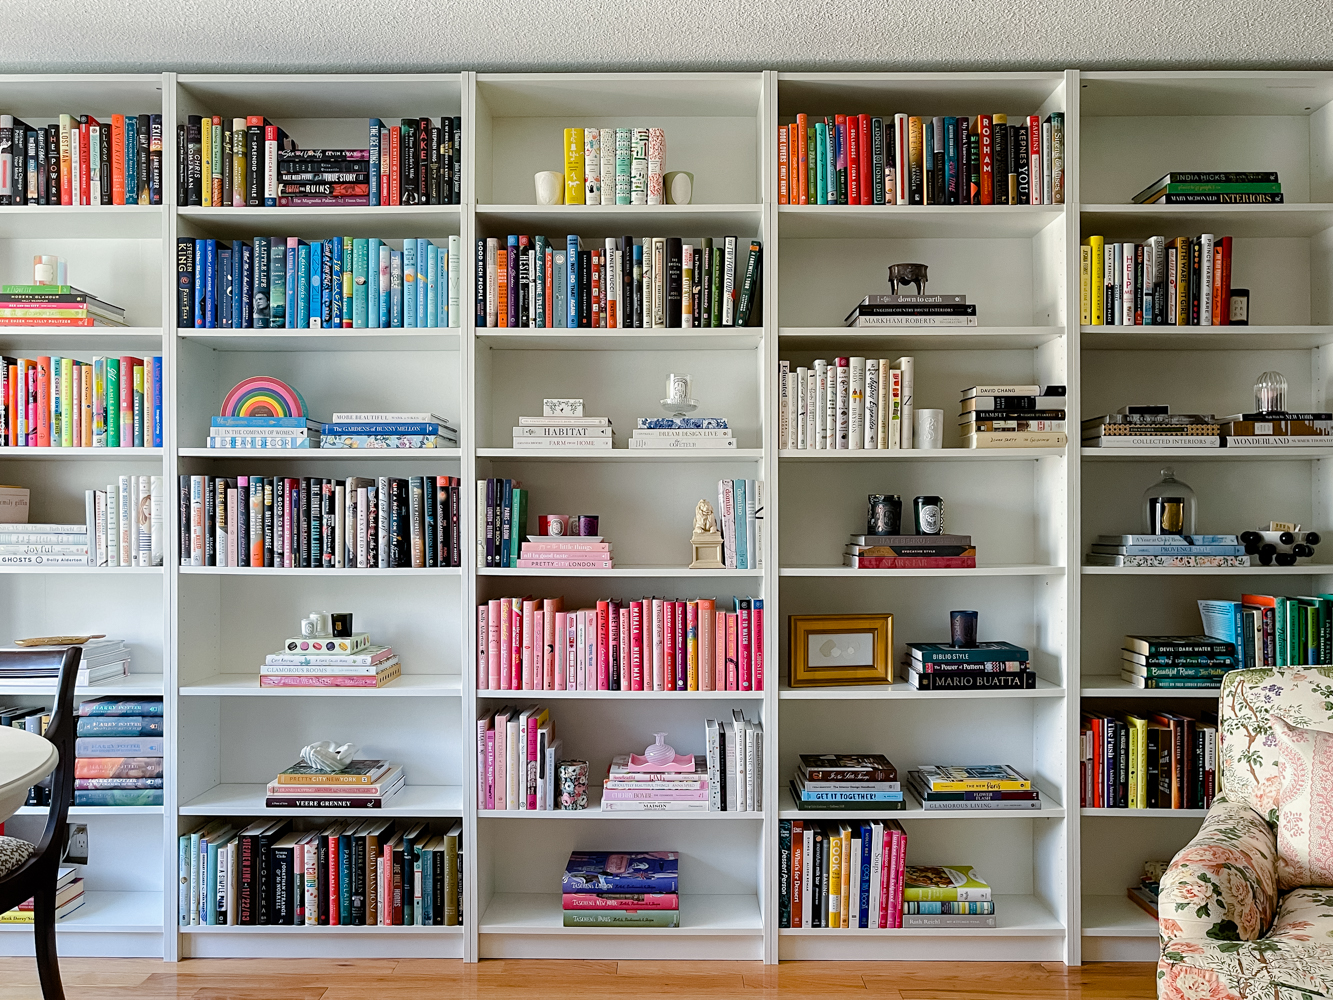 BILLY bookcase with drawer, white, 80x30x202 cm (311/2x113/4x791/2) - IKEA  CA